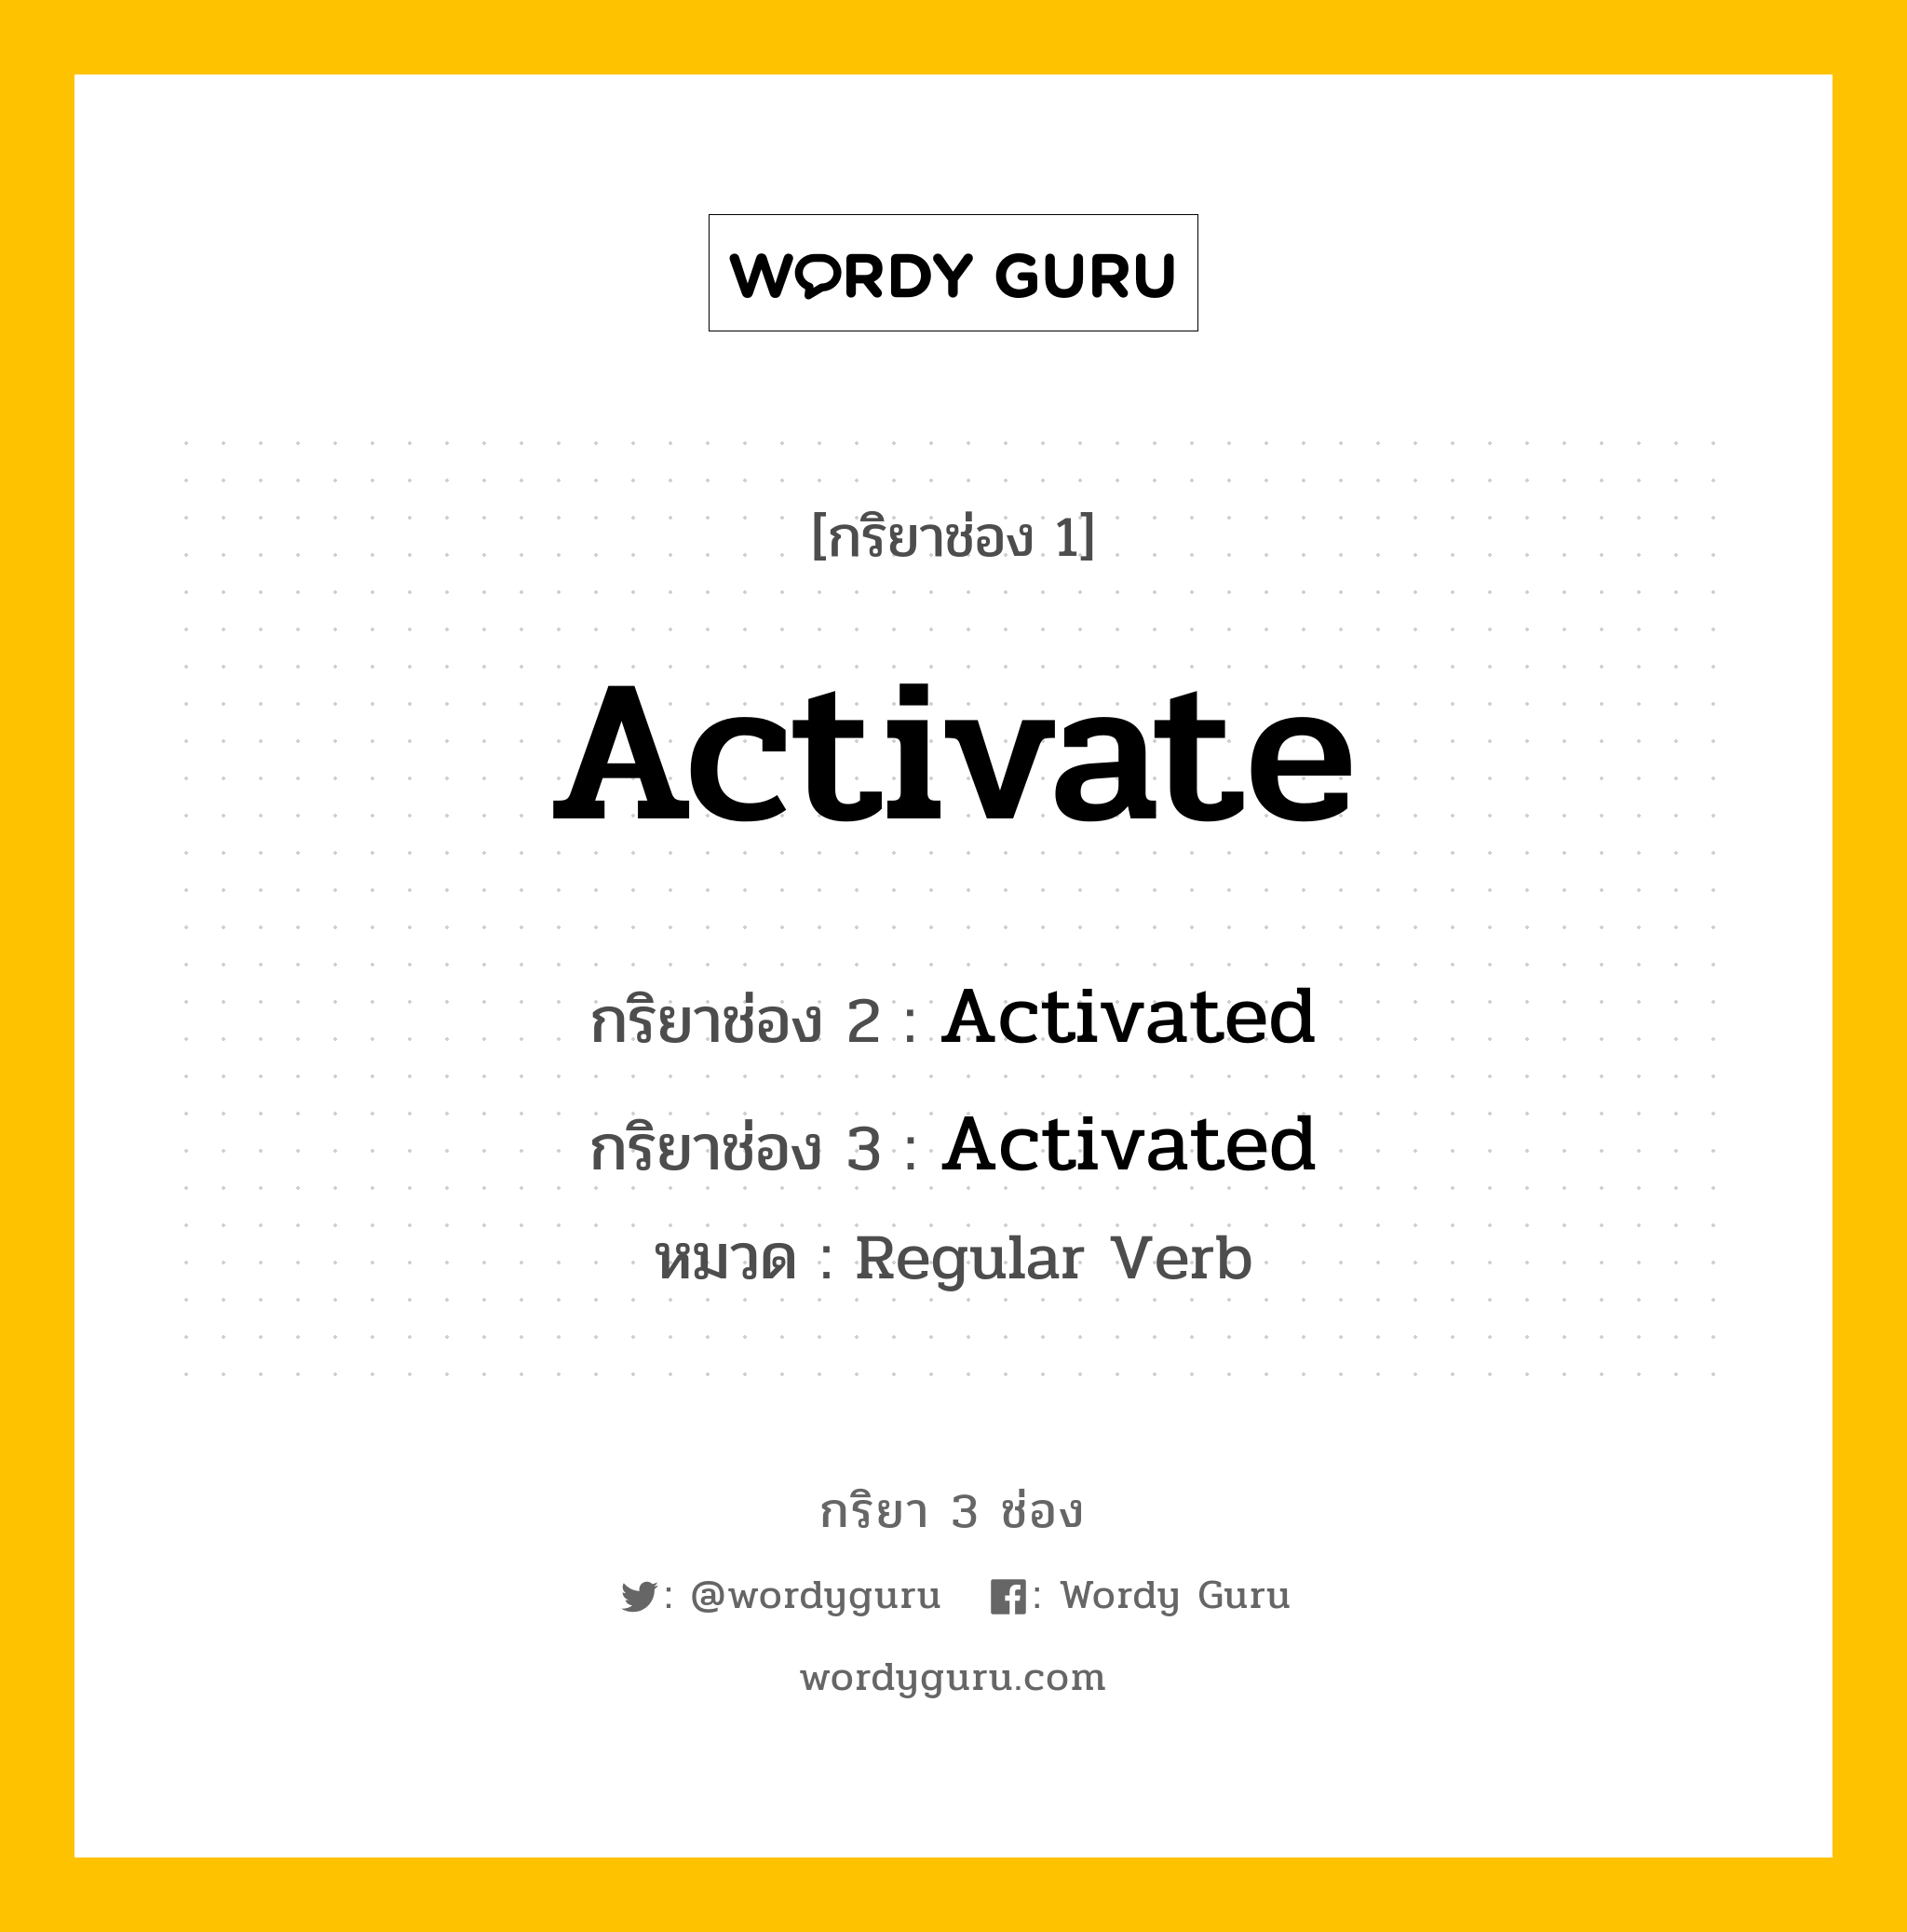 Activate มีกริยา 3 ช่องอะไรบ้าง? คำศัพท์ในกลุ่มประเภท Regular Verb, กริยาช่อง 1 Activate กริยาช่อง 2 Activated กริยาช่อง 3 Activated หมวด Regular Verb หมวด Regular Verb